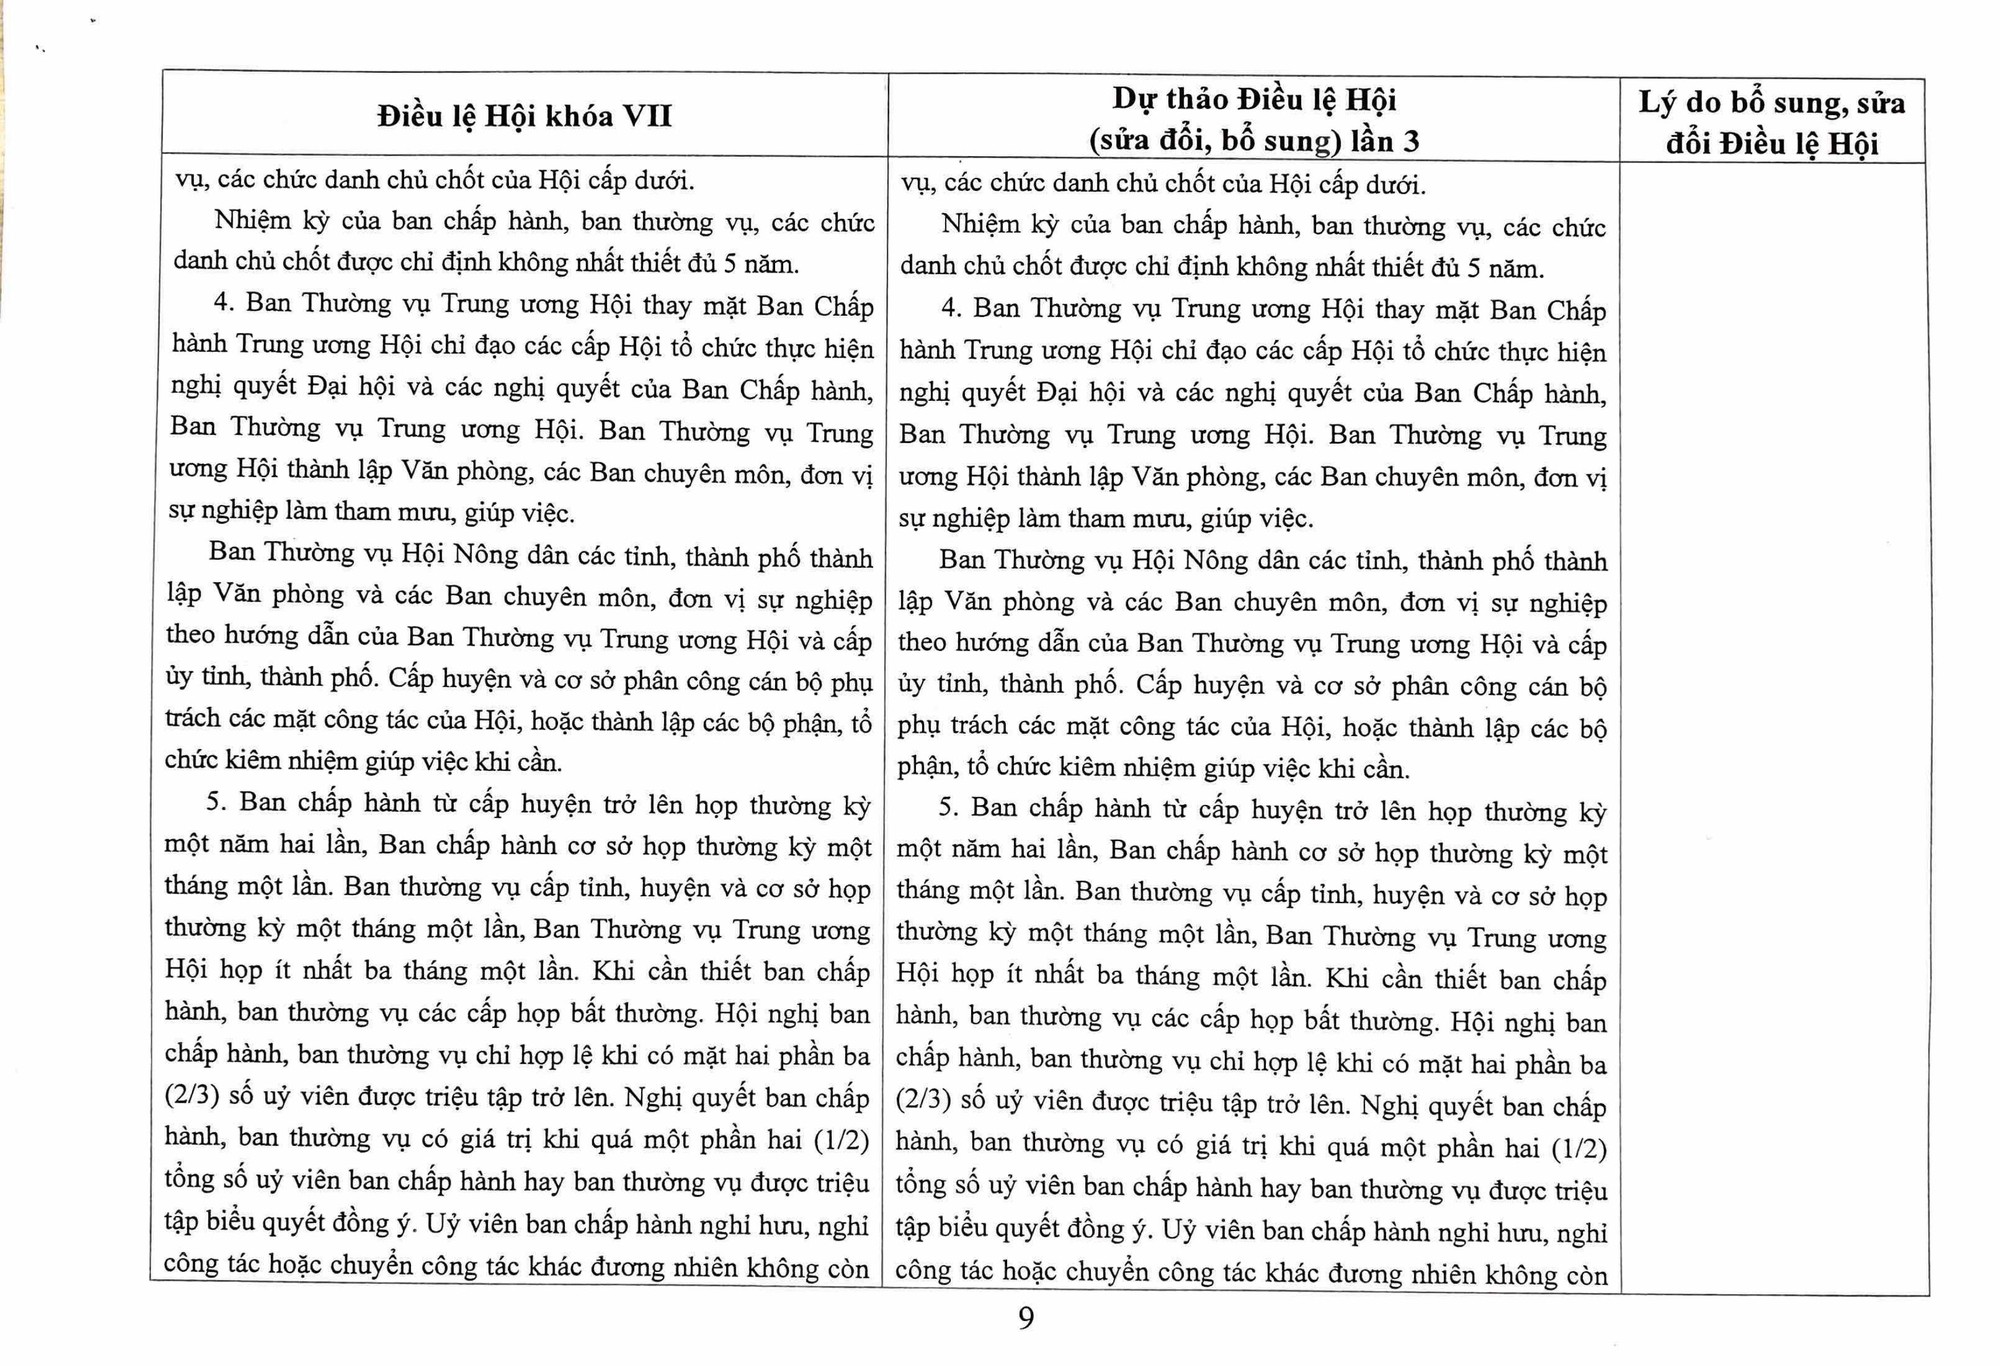 Toàn văn Dự thảo Điều lệ Hội Nông dân Việt Nam sửa đổi, bổ sung - Ảnh 9.